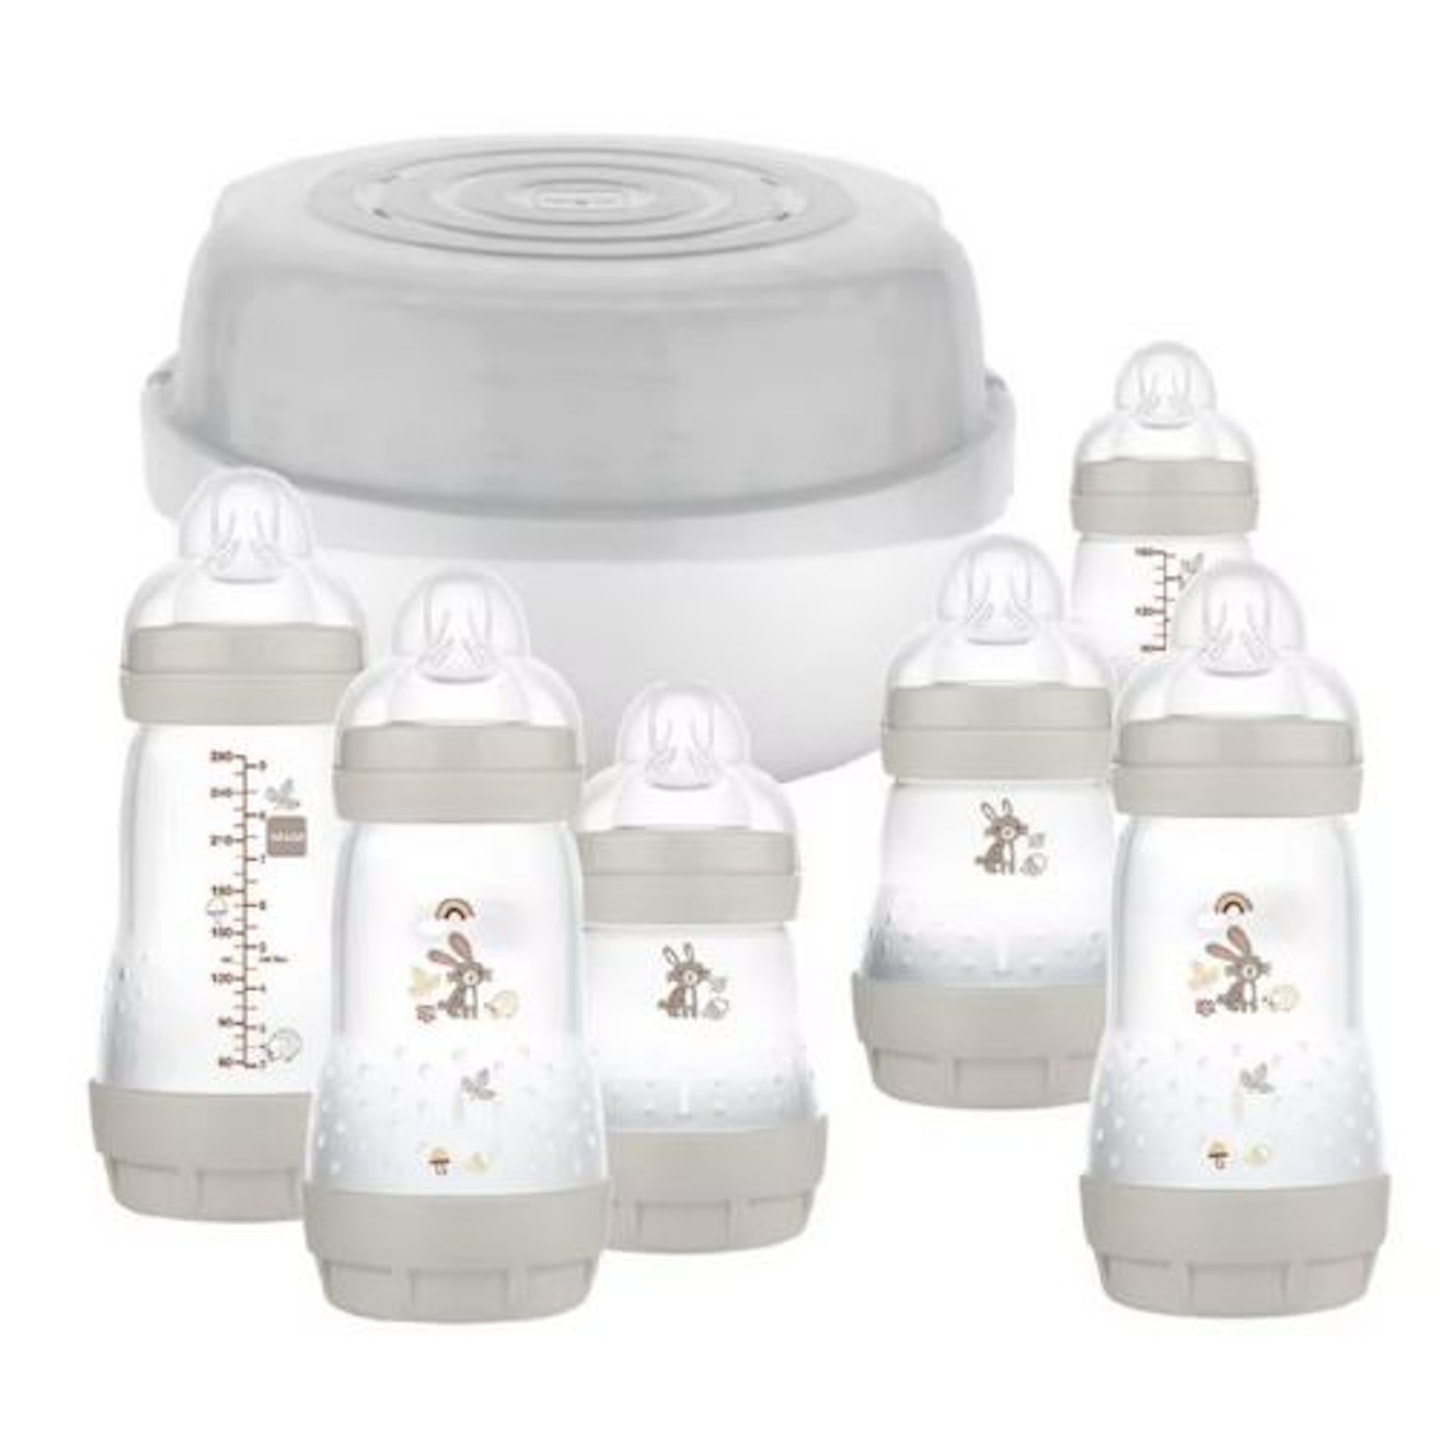 Best baby sterilisers MAM Easy Start Microwave Bottle Steriliser Set 